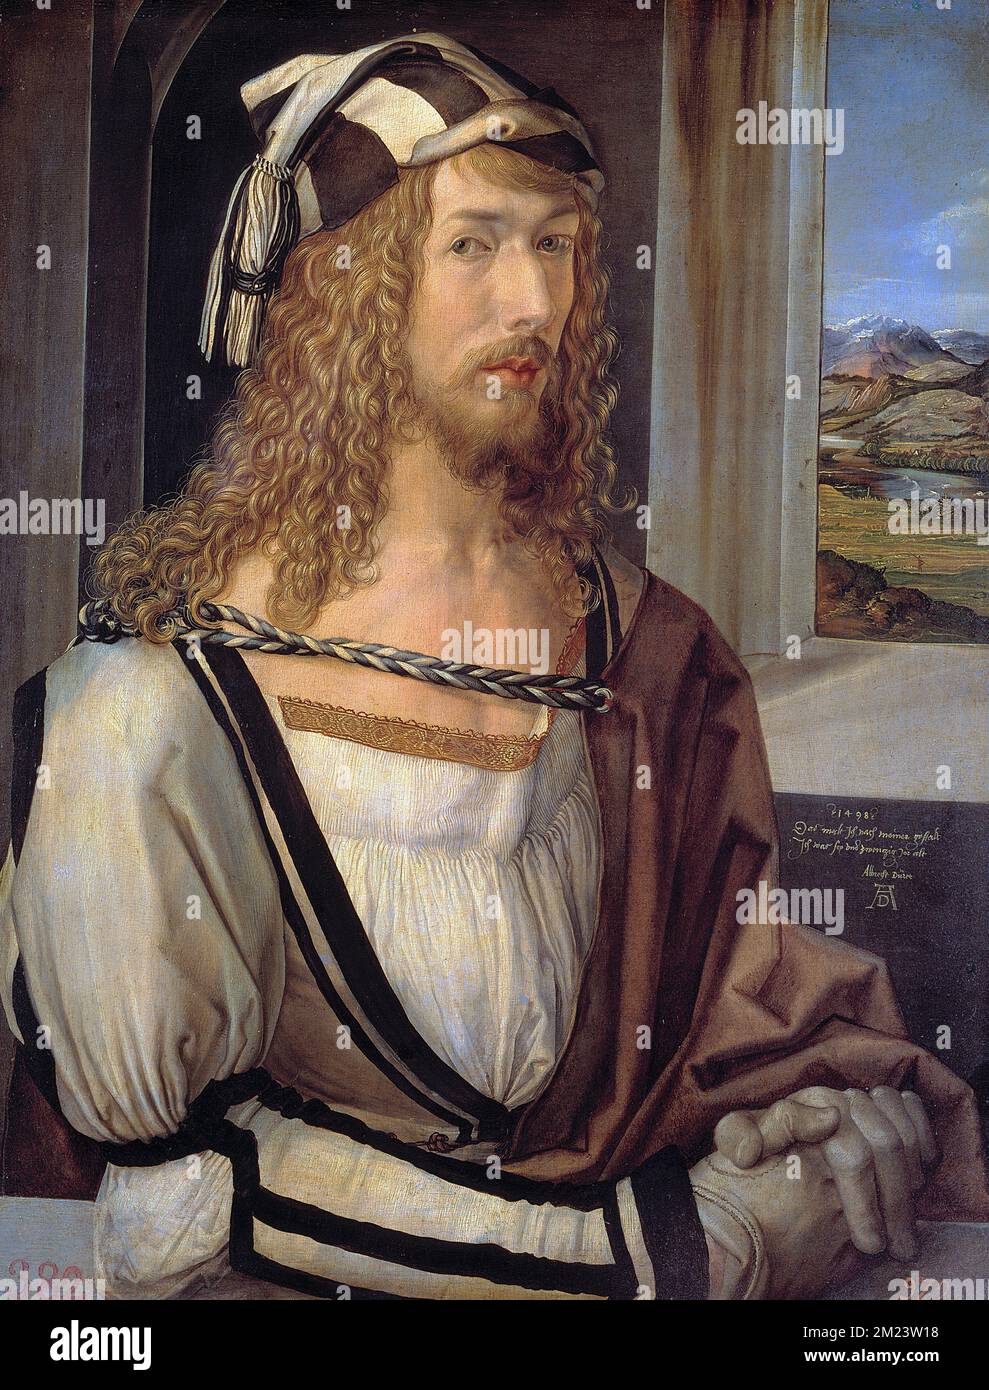 Autoritratto di Dürer al 26, 1497, Autoritratto di Albrecht Dürer, Pittura di Albrecht Dürer, Albrecht Dürer (1471 – 1528), pittore tedesco Foto Stock